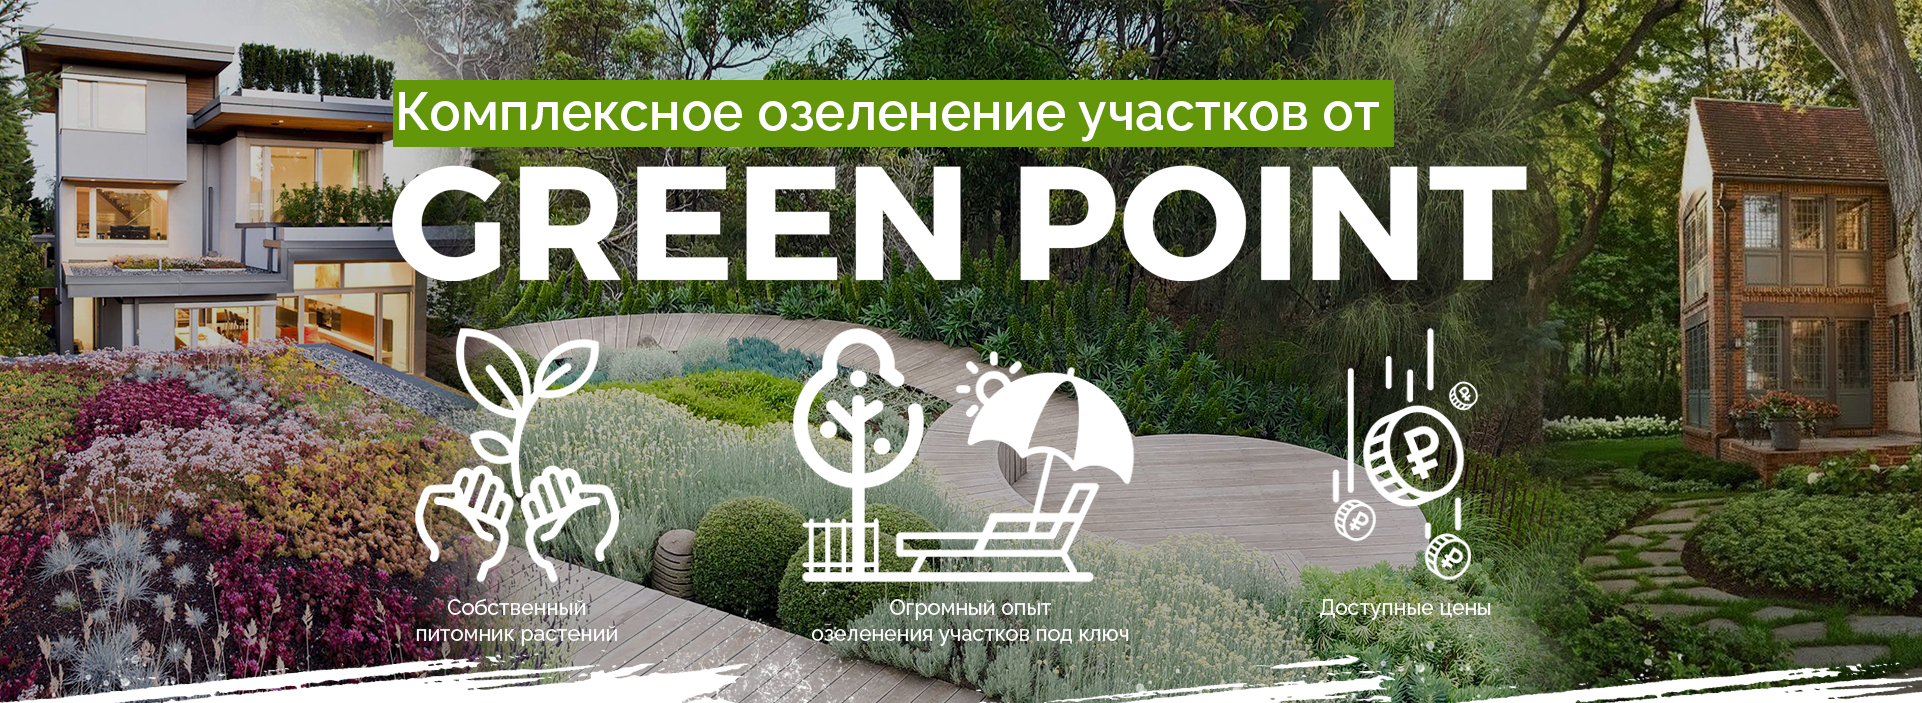 Служба озеленения и благоустройства GreenPoint.